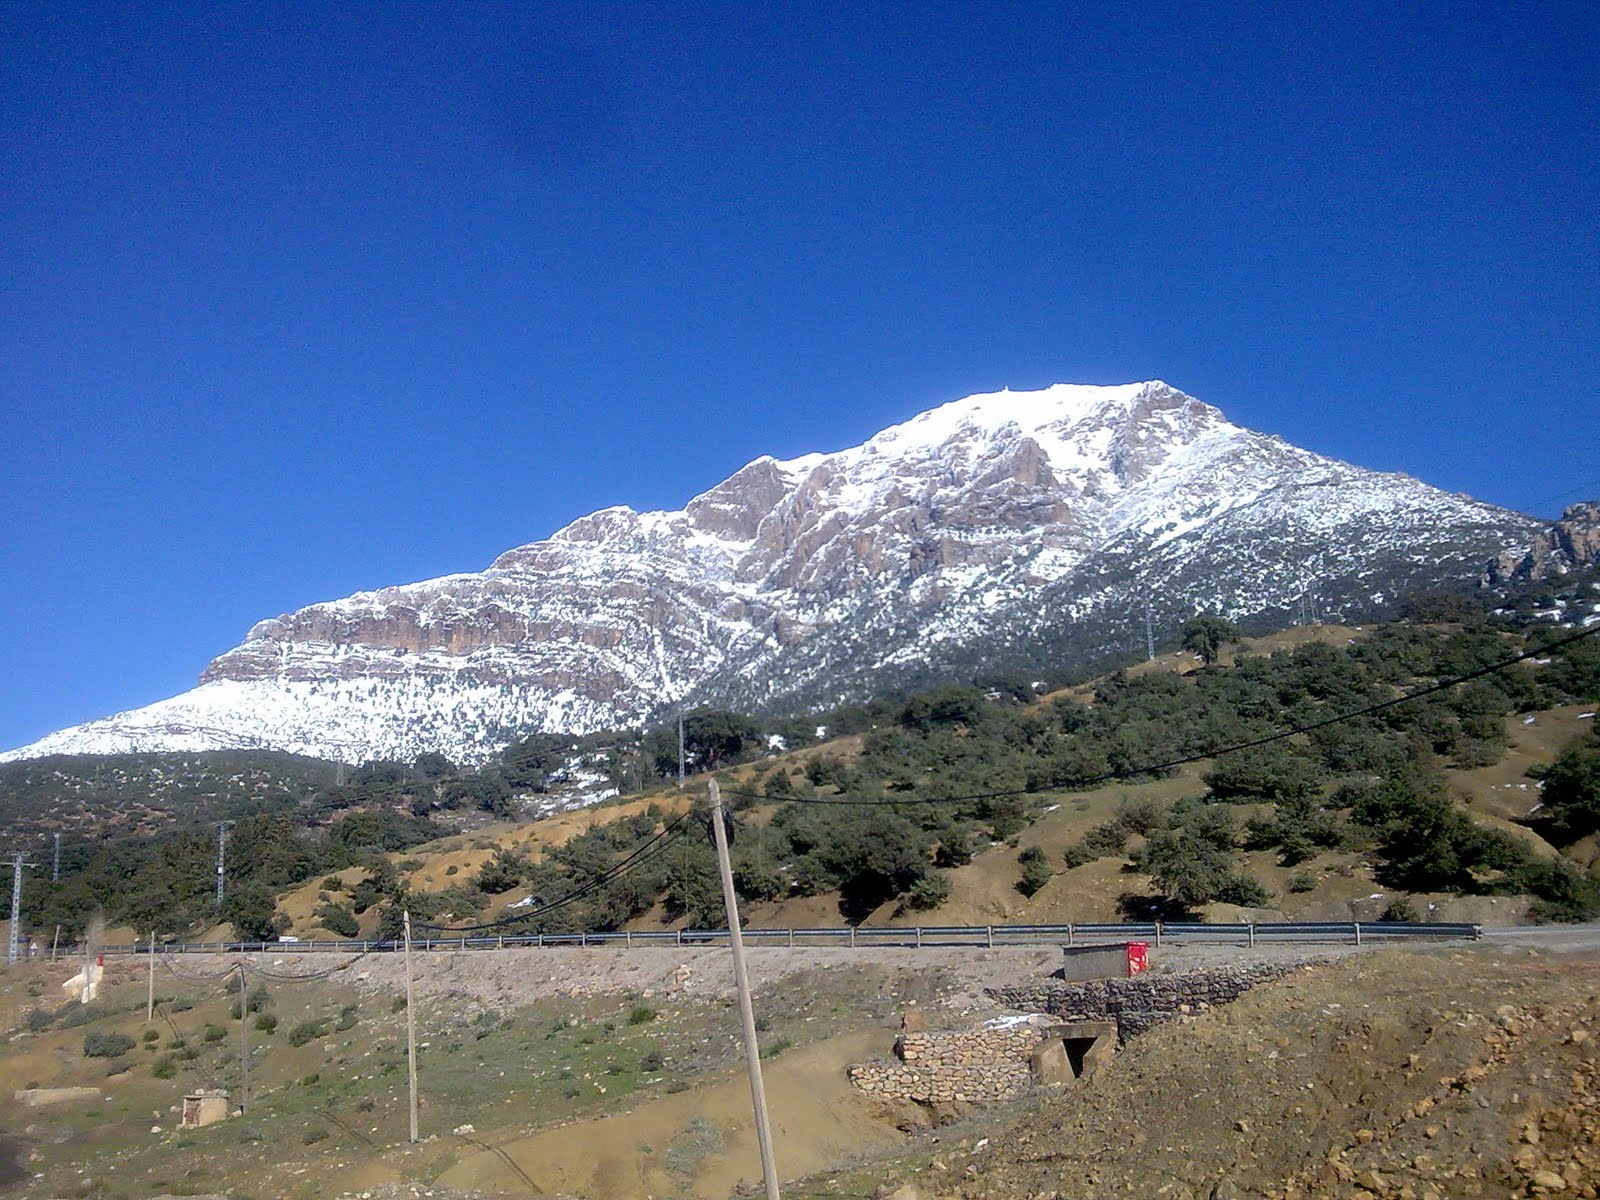  صور رائعة لجبال الونشريس لا تفوتوها  Image020